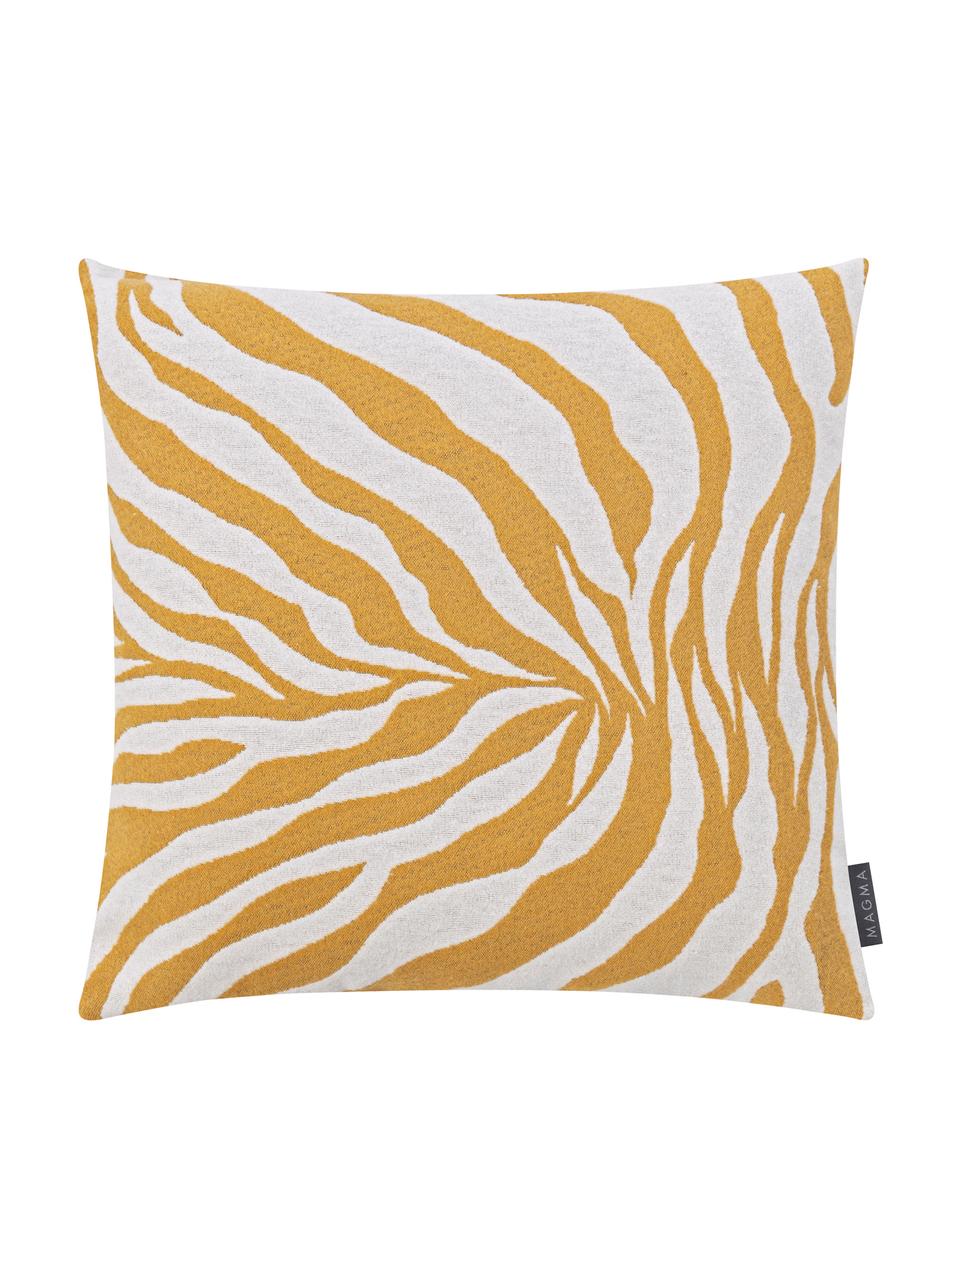 Poszewka na poduszkę Zebra, Musztardowy, biały, S 50 x D 50 cm